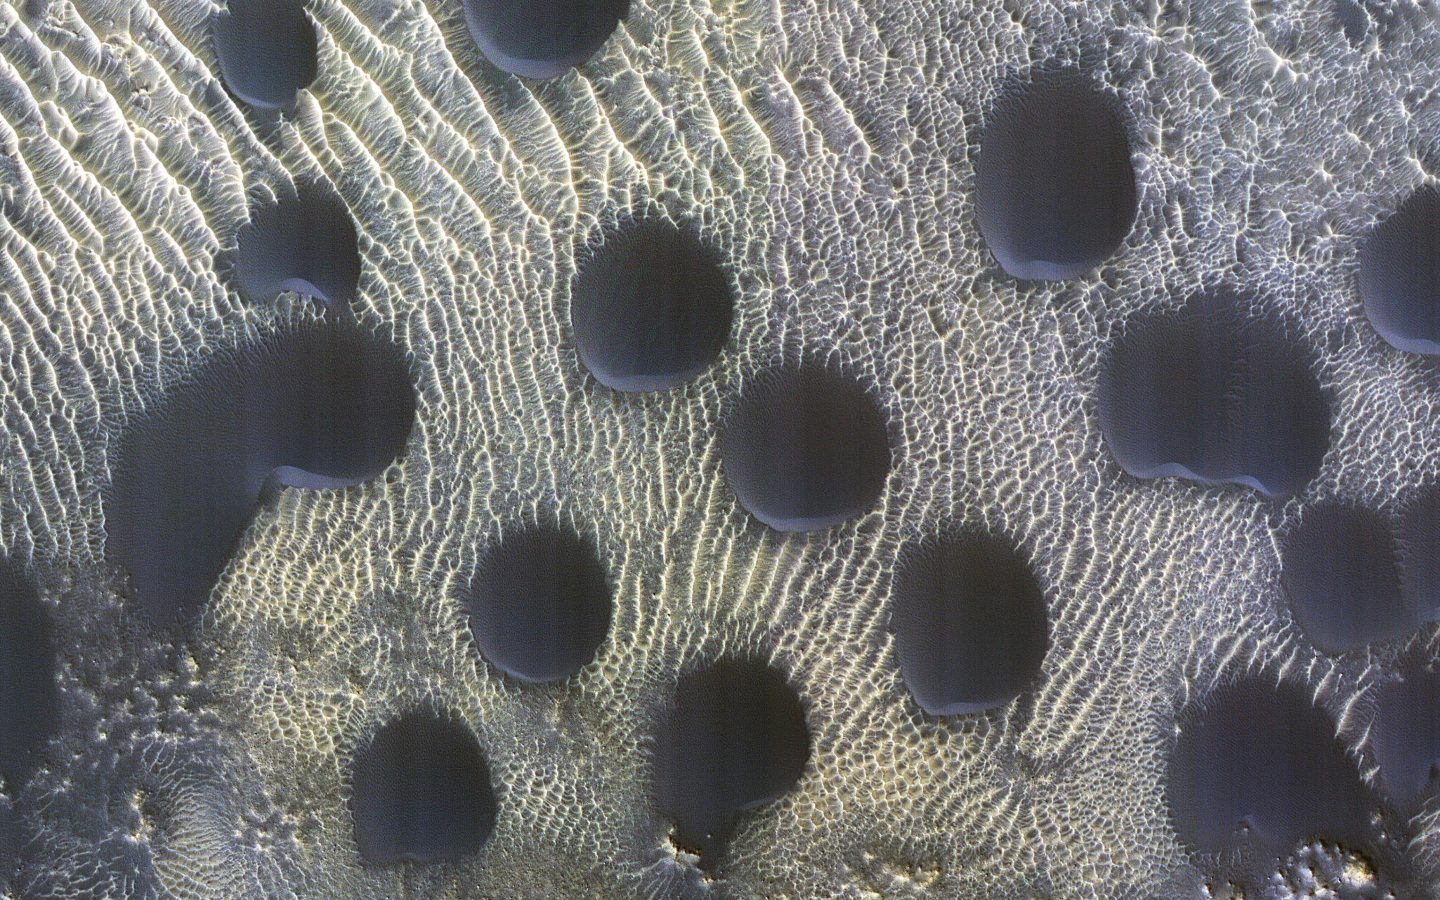 التقاط صور لدوائر غريبة الشكل على كوكب المريخ